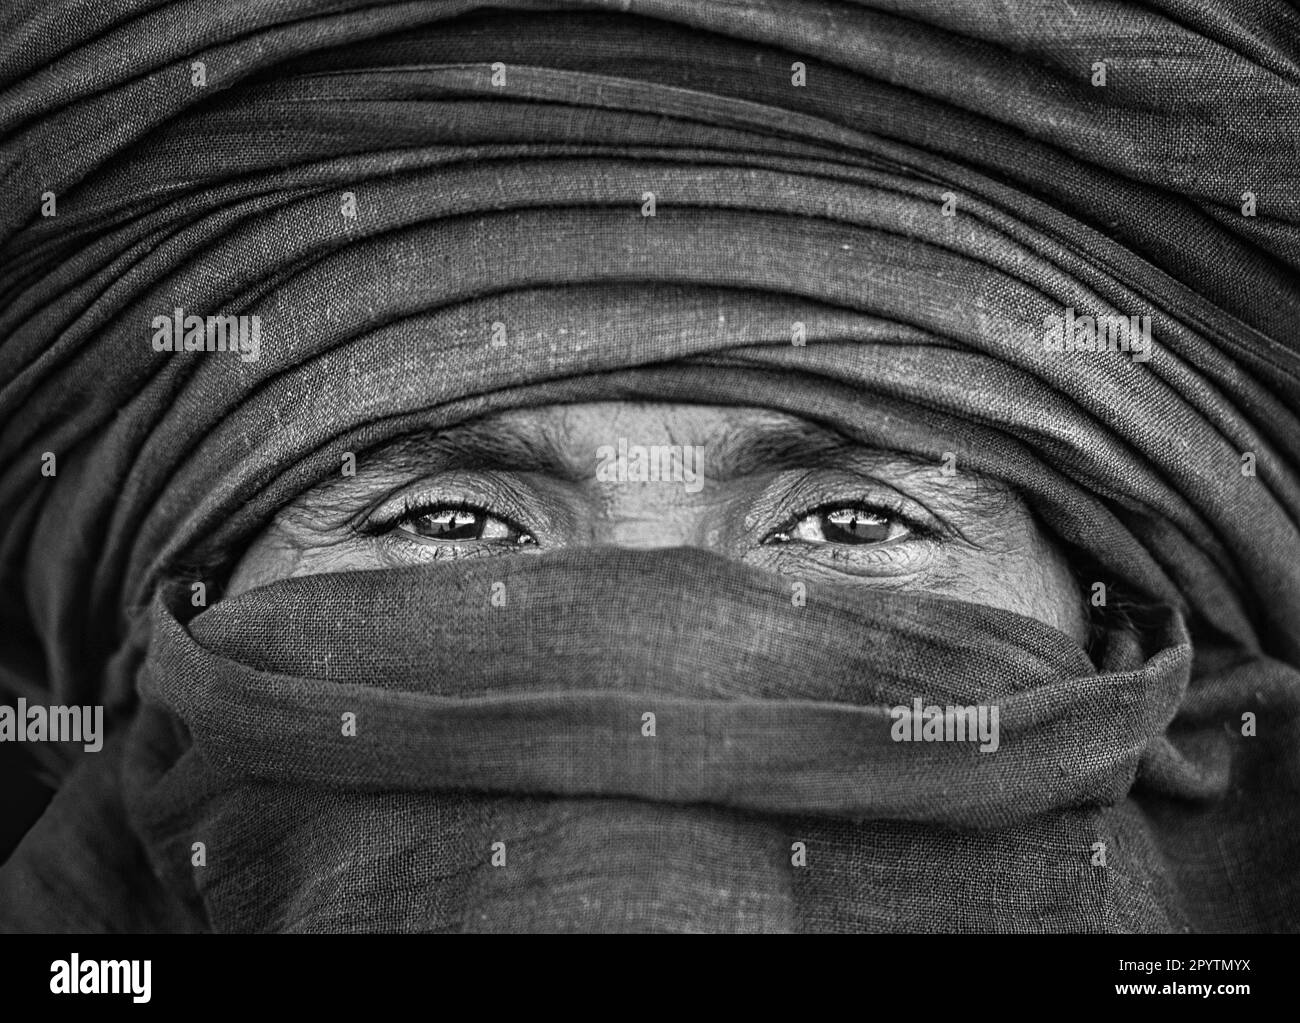 Algeria, vicino a Djanet. Deserto del Sahara. Uomo della tribù Tuareg. Verticale. Bianco e nero. Foto Stock